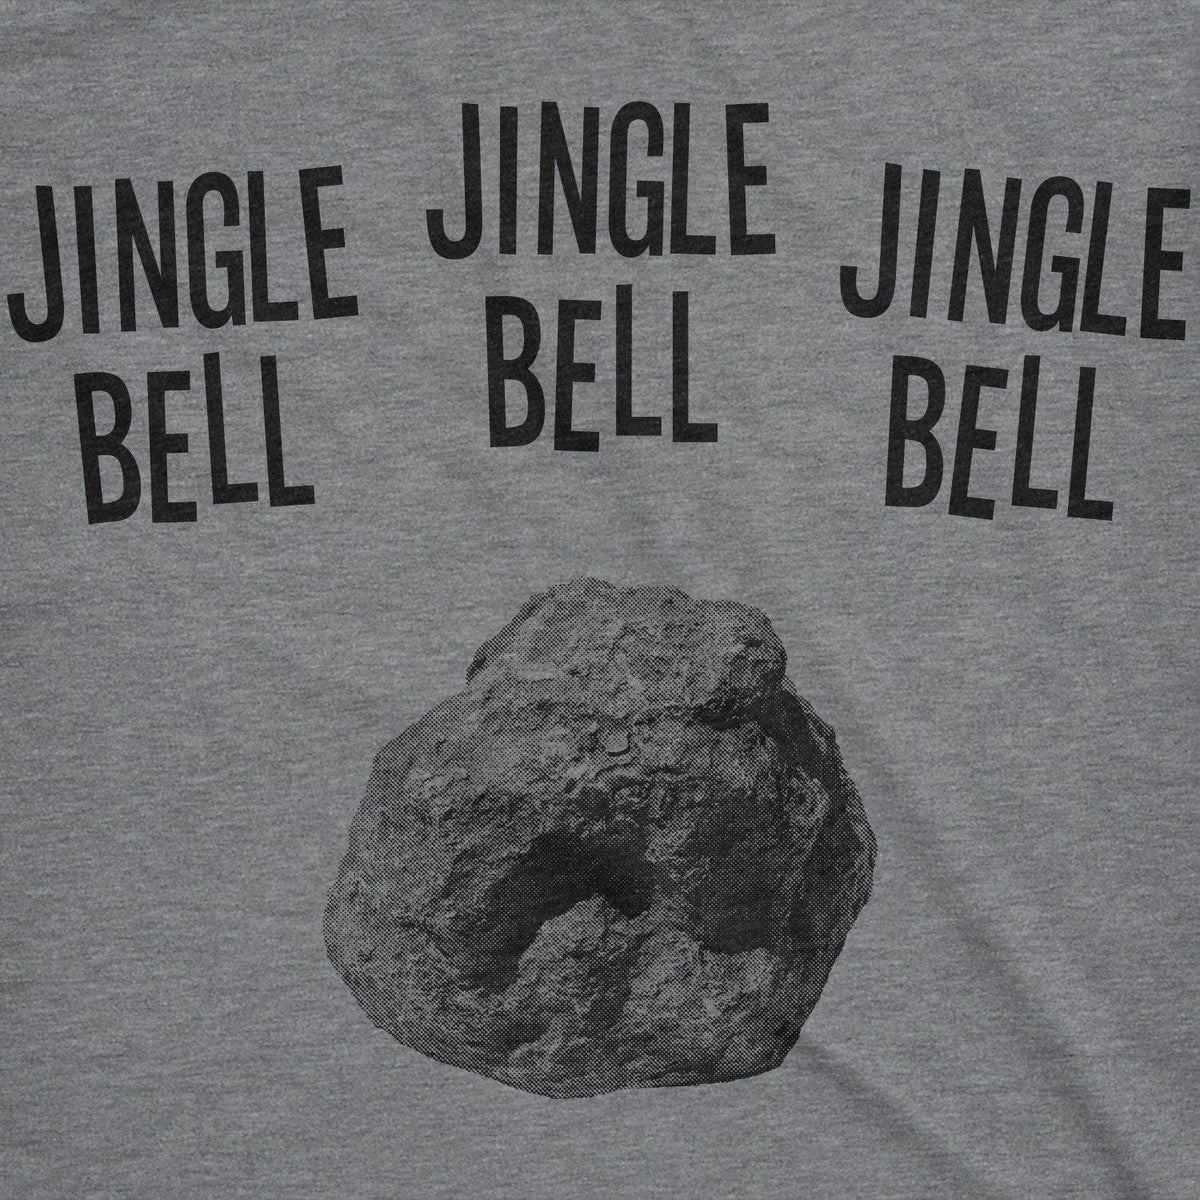 Jingle Bell Rock Women&#39;s Tshirt - Crazy Dog T-Shirts